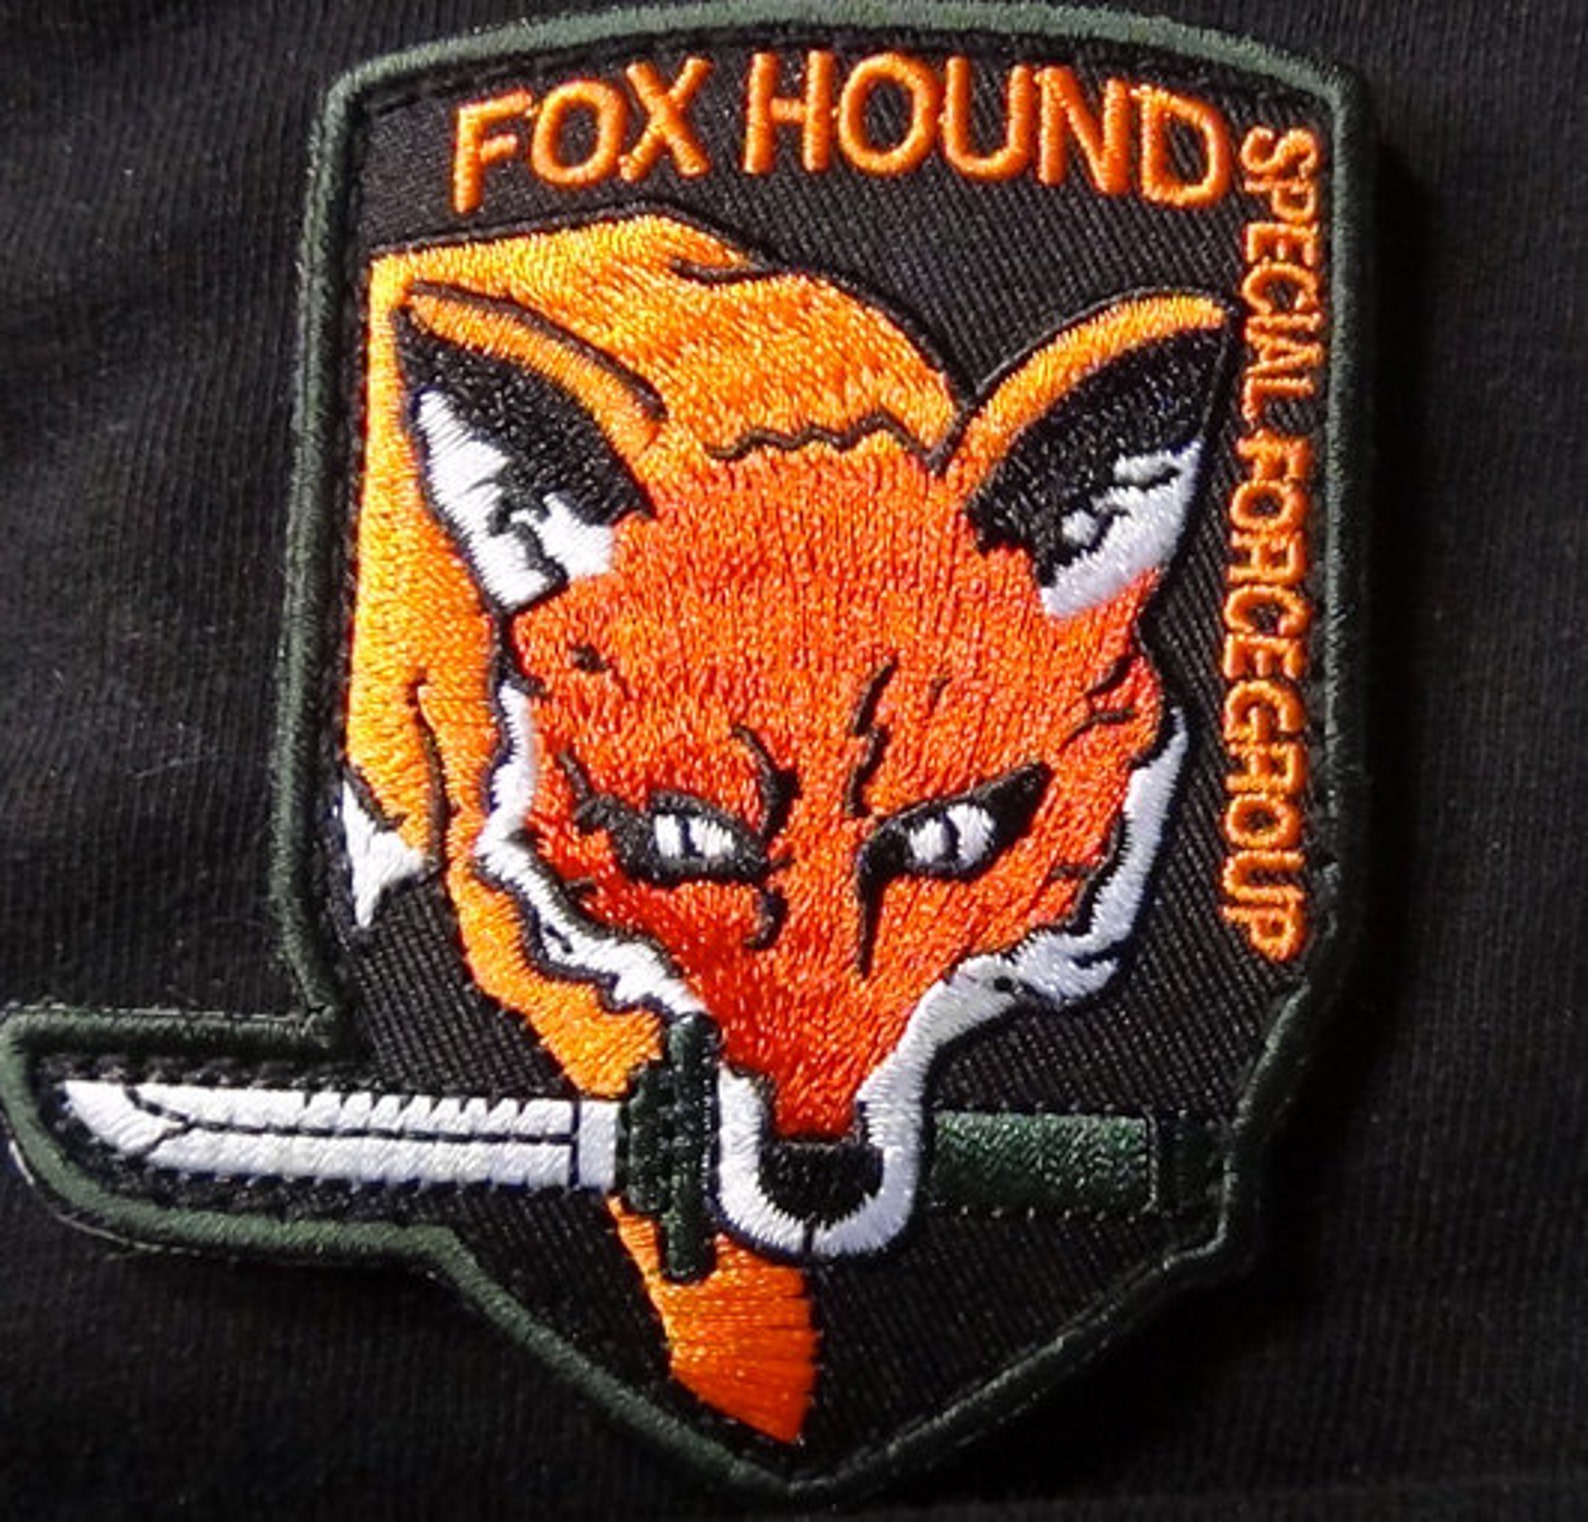 Fox hound. Foxhound MGS нашивка. Foxhound Metal Gear нашивка. Fox Metal Gear Solid нашивка. Foxhound Шеврон.